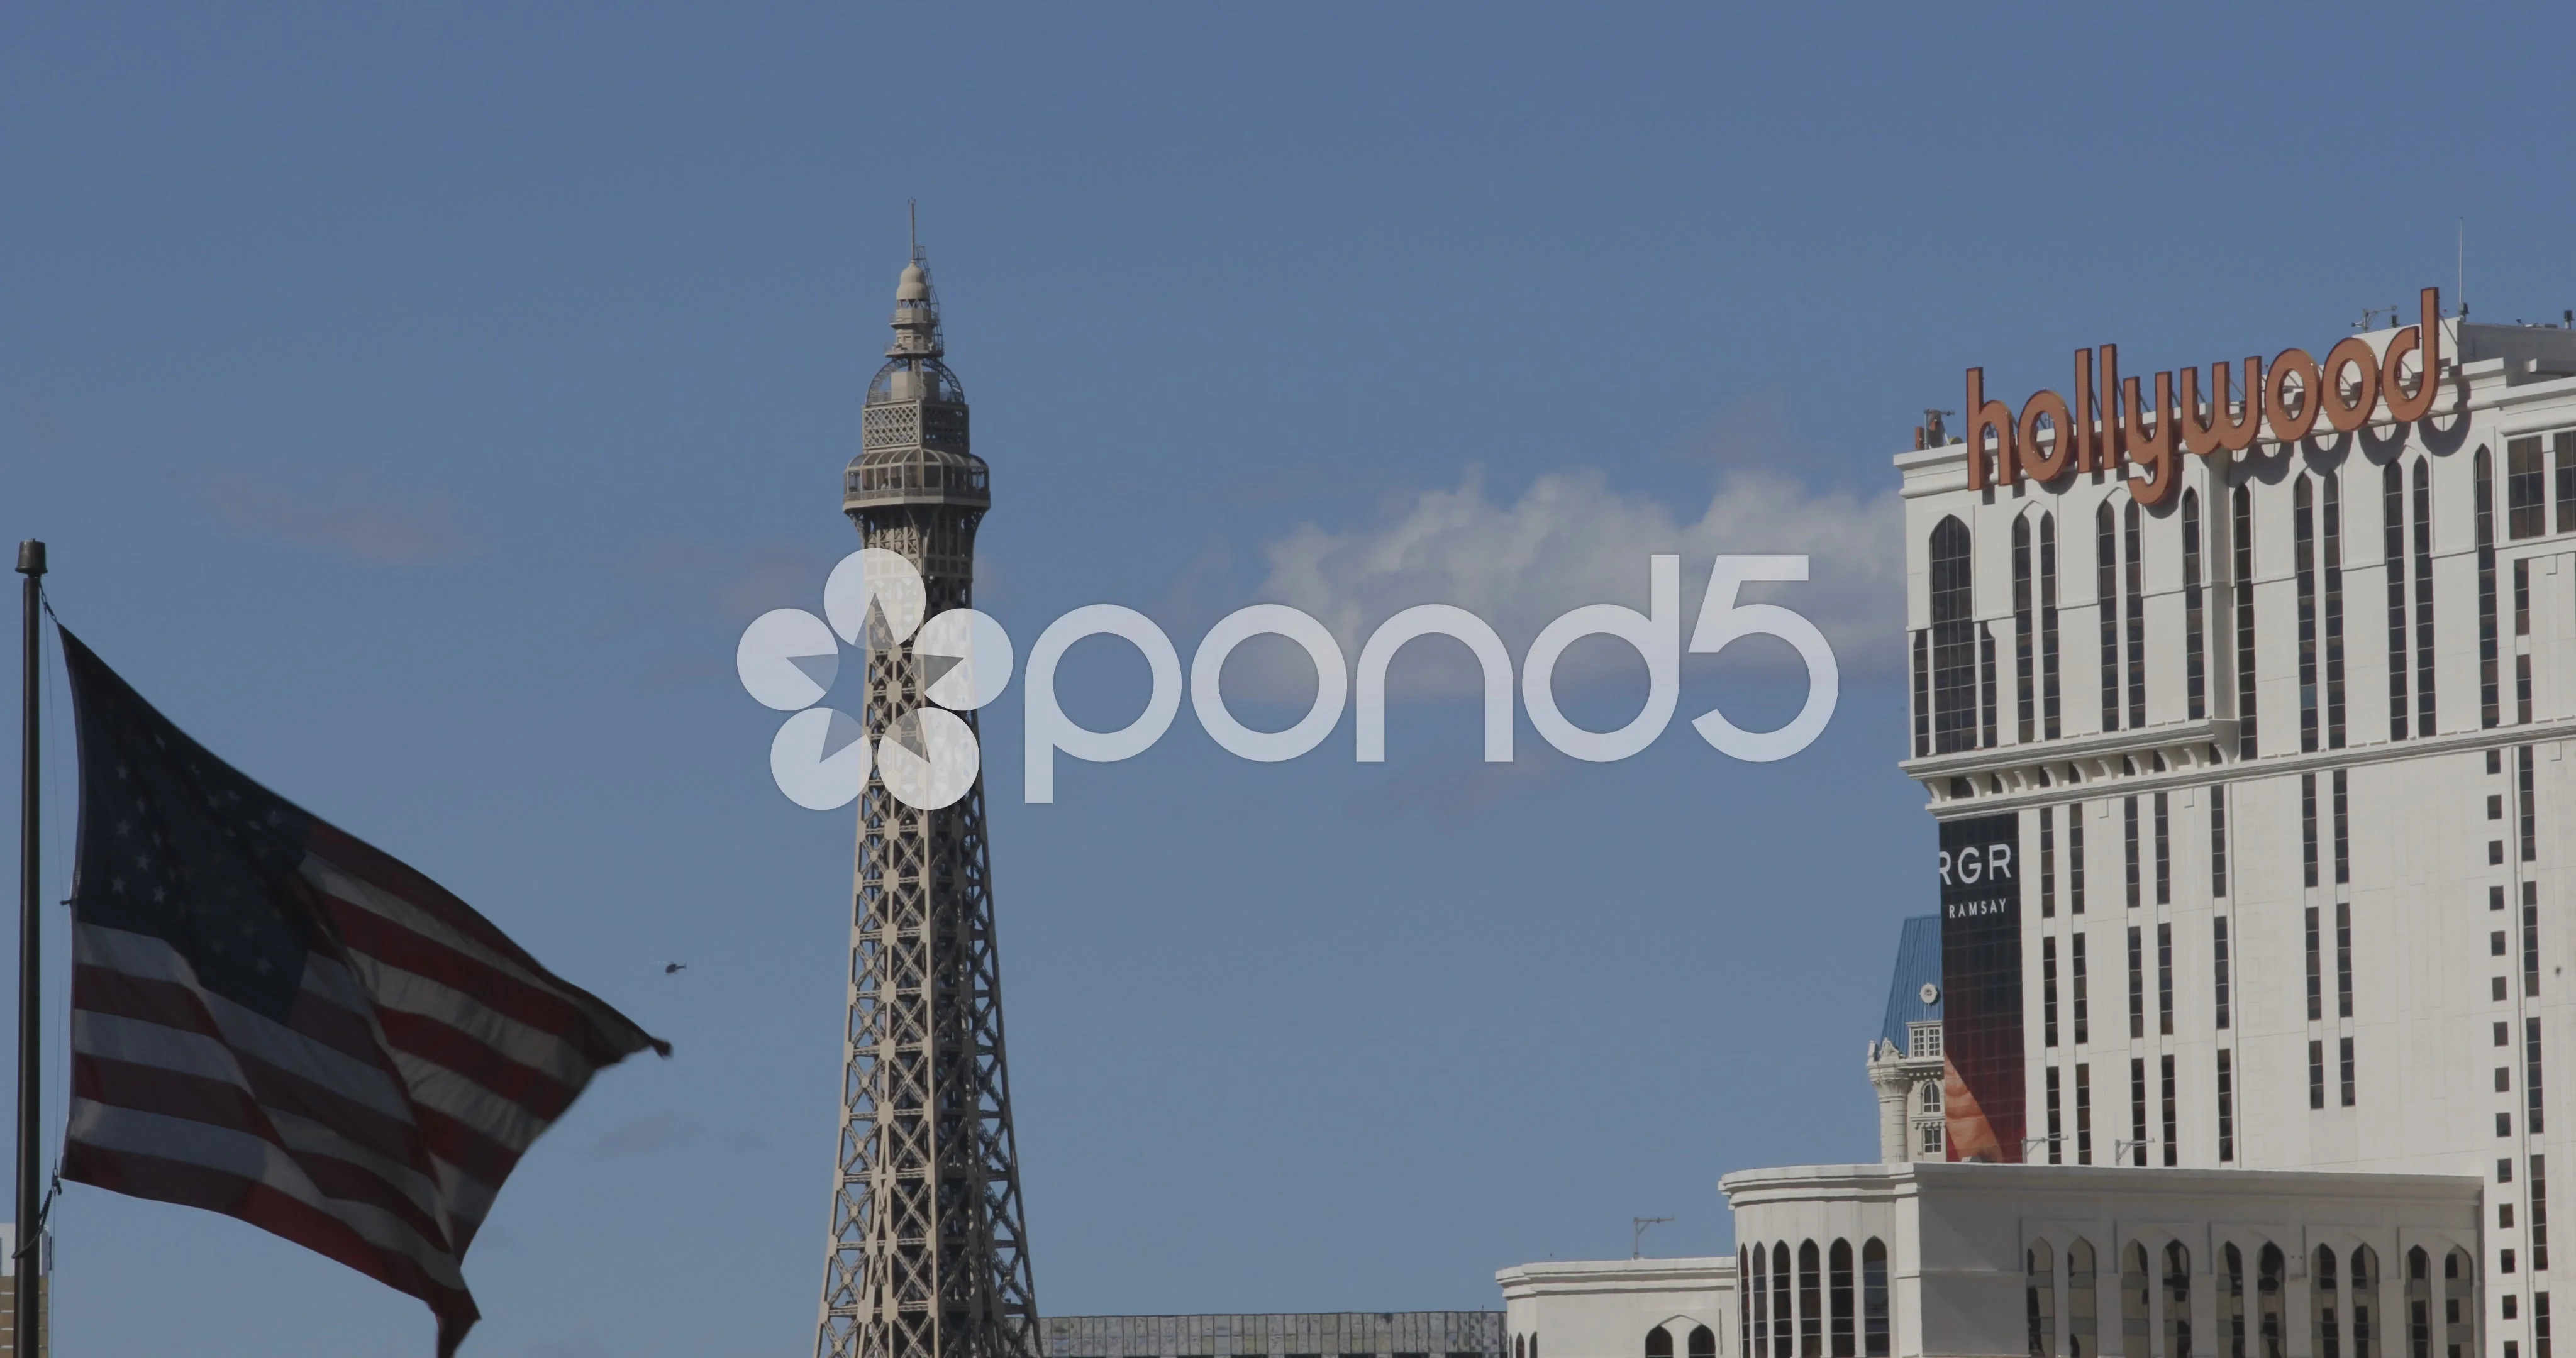 Eiffel Tower Las Vegas – American Travelink